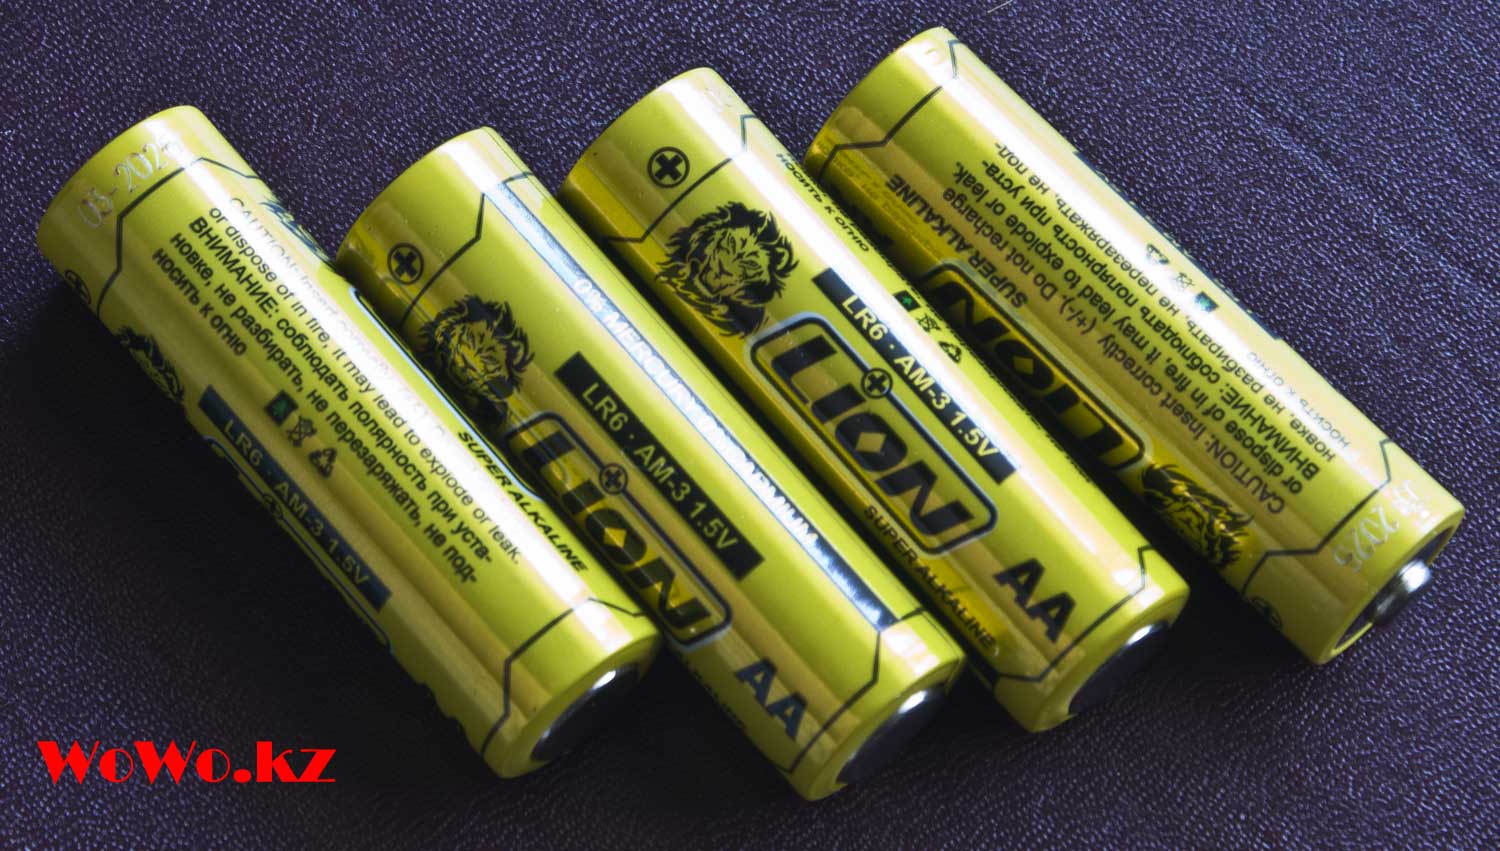 Lion батарейки размера AA LR6 Alkaline стоит ли их покупать, долго ли работают?